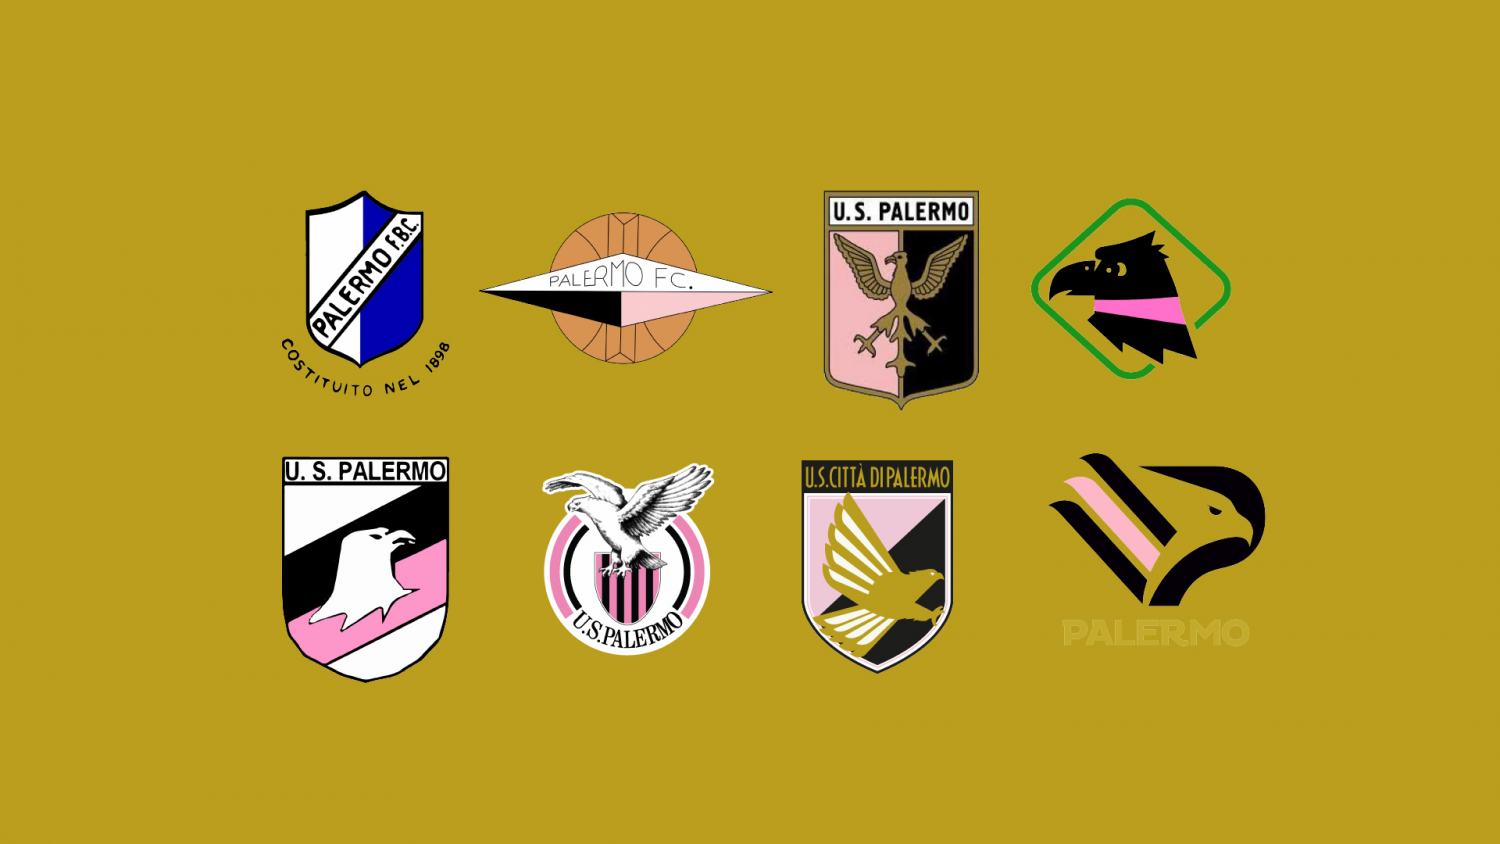 Ora che il CityGroup ha comprato il Palermo serve un logo nuovo